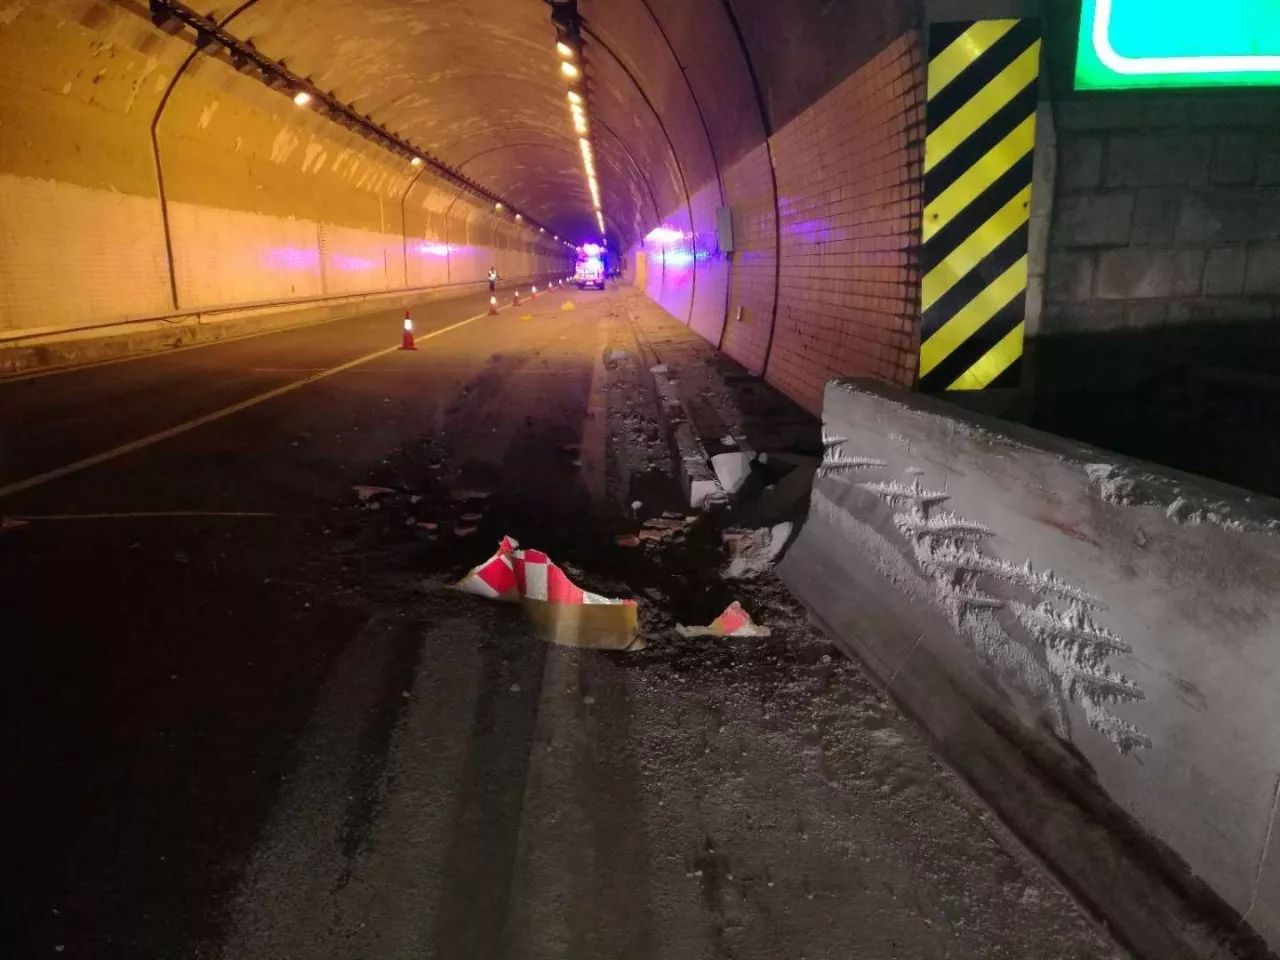 夜间行车犯困发生事故撞得隧道内一片狼藉丽水高速交警赶到现场后发现